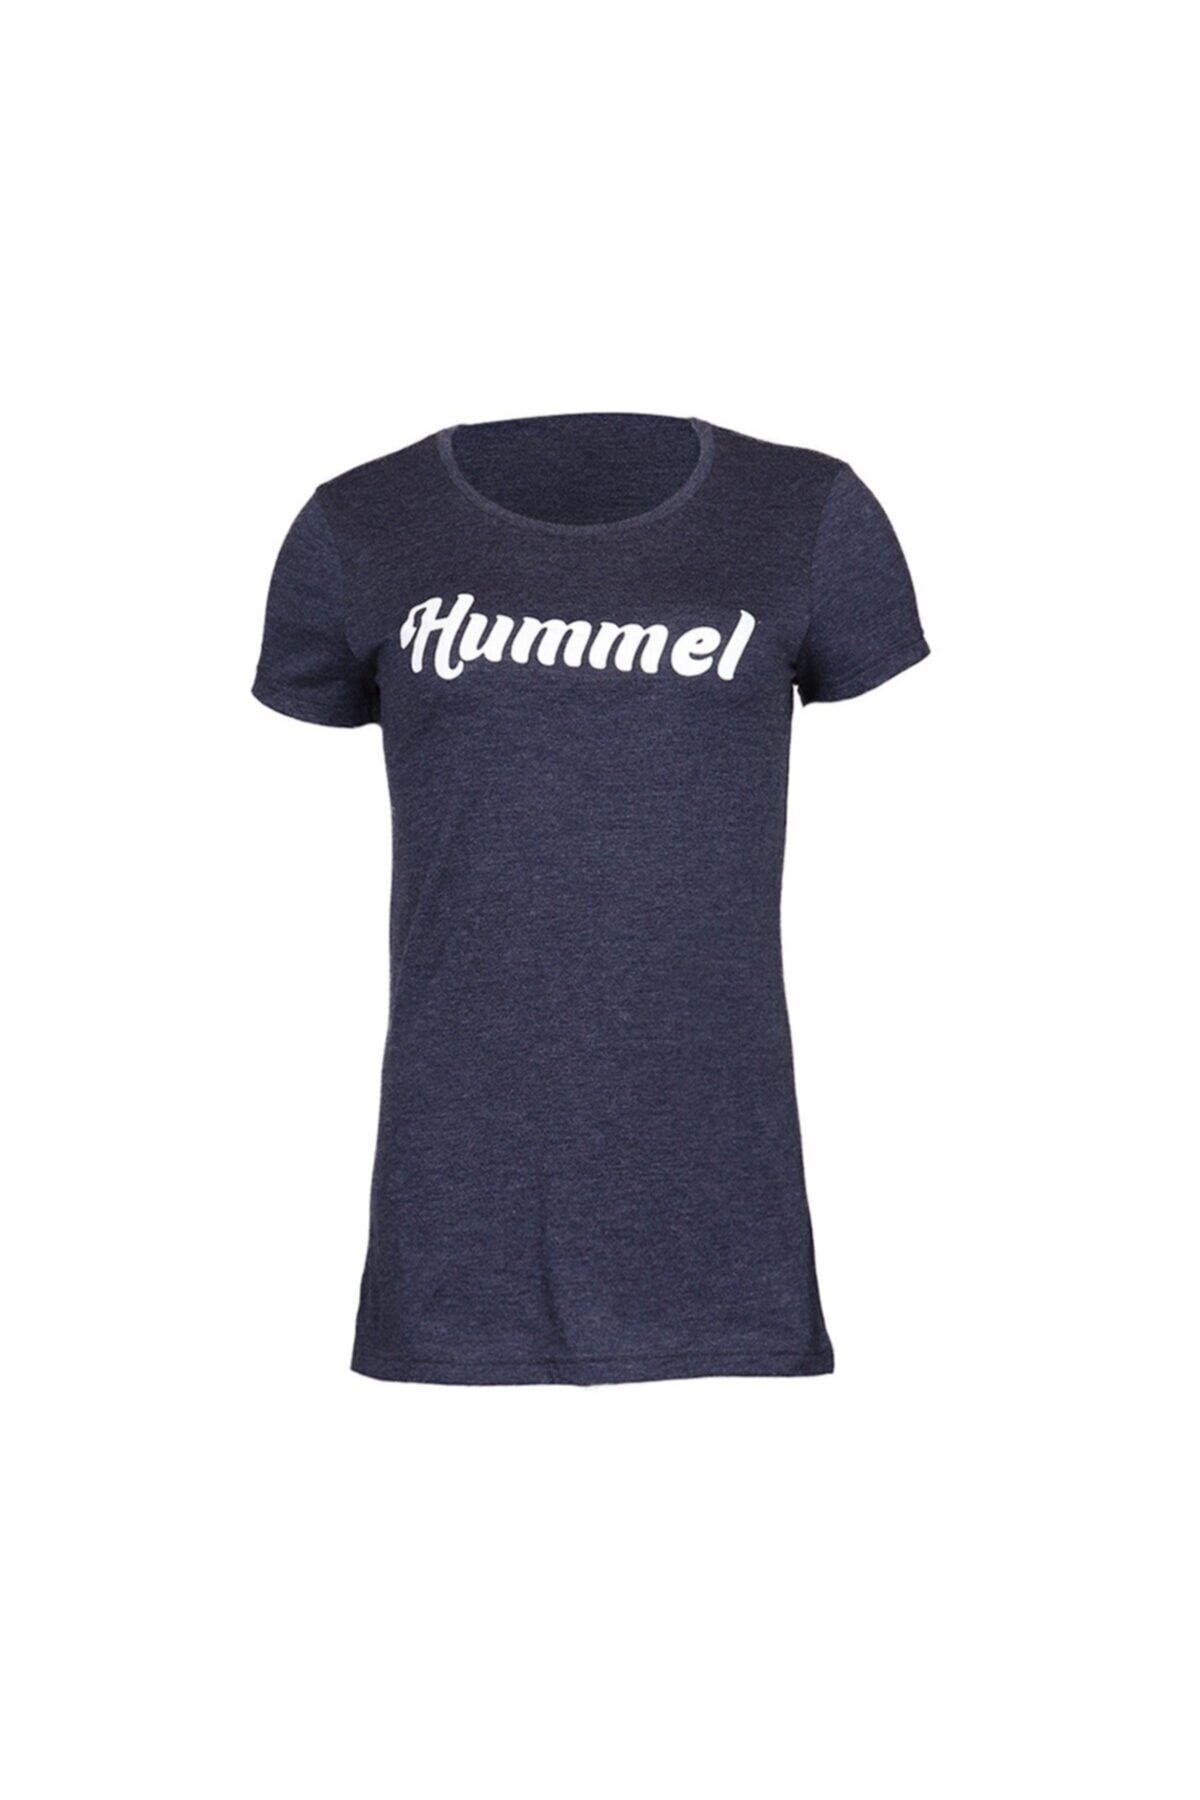 hummel Hmluhıra T-shırt S/s Lacivert Kadın Kısa Kol T-shirt